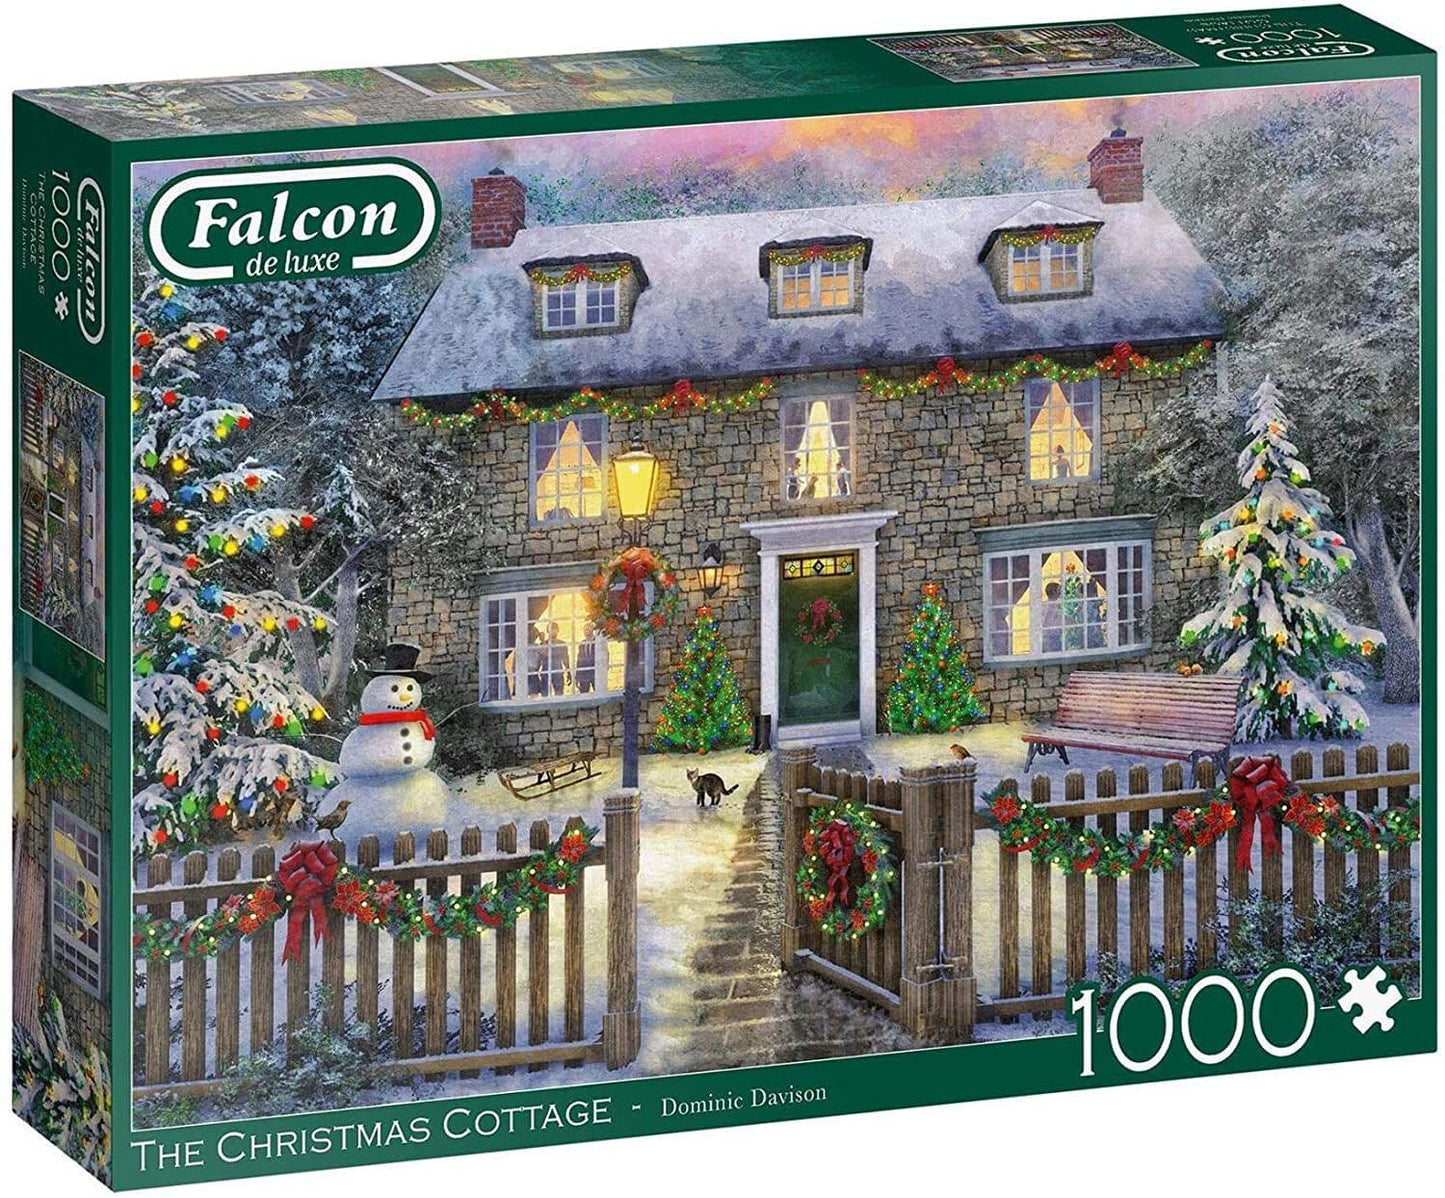 Falcon de luxe - Christmas Cottage - 1000 Piece Jigsaw Puzzle